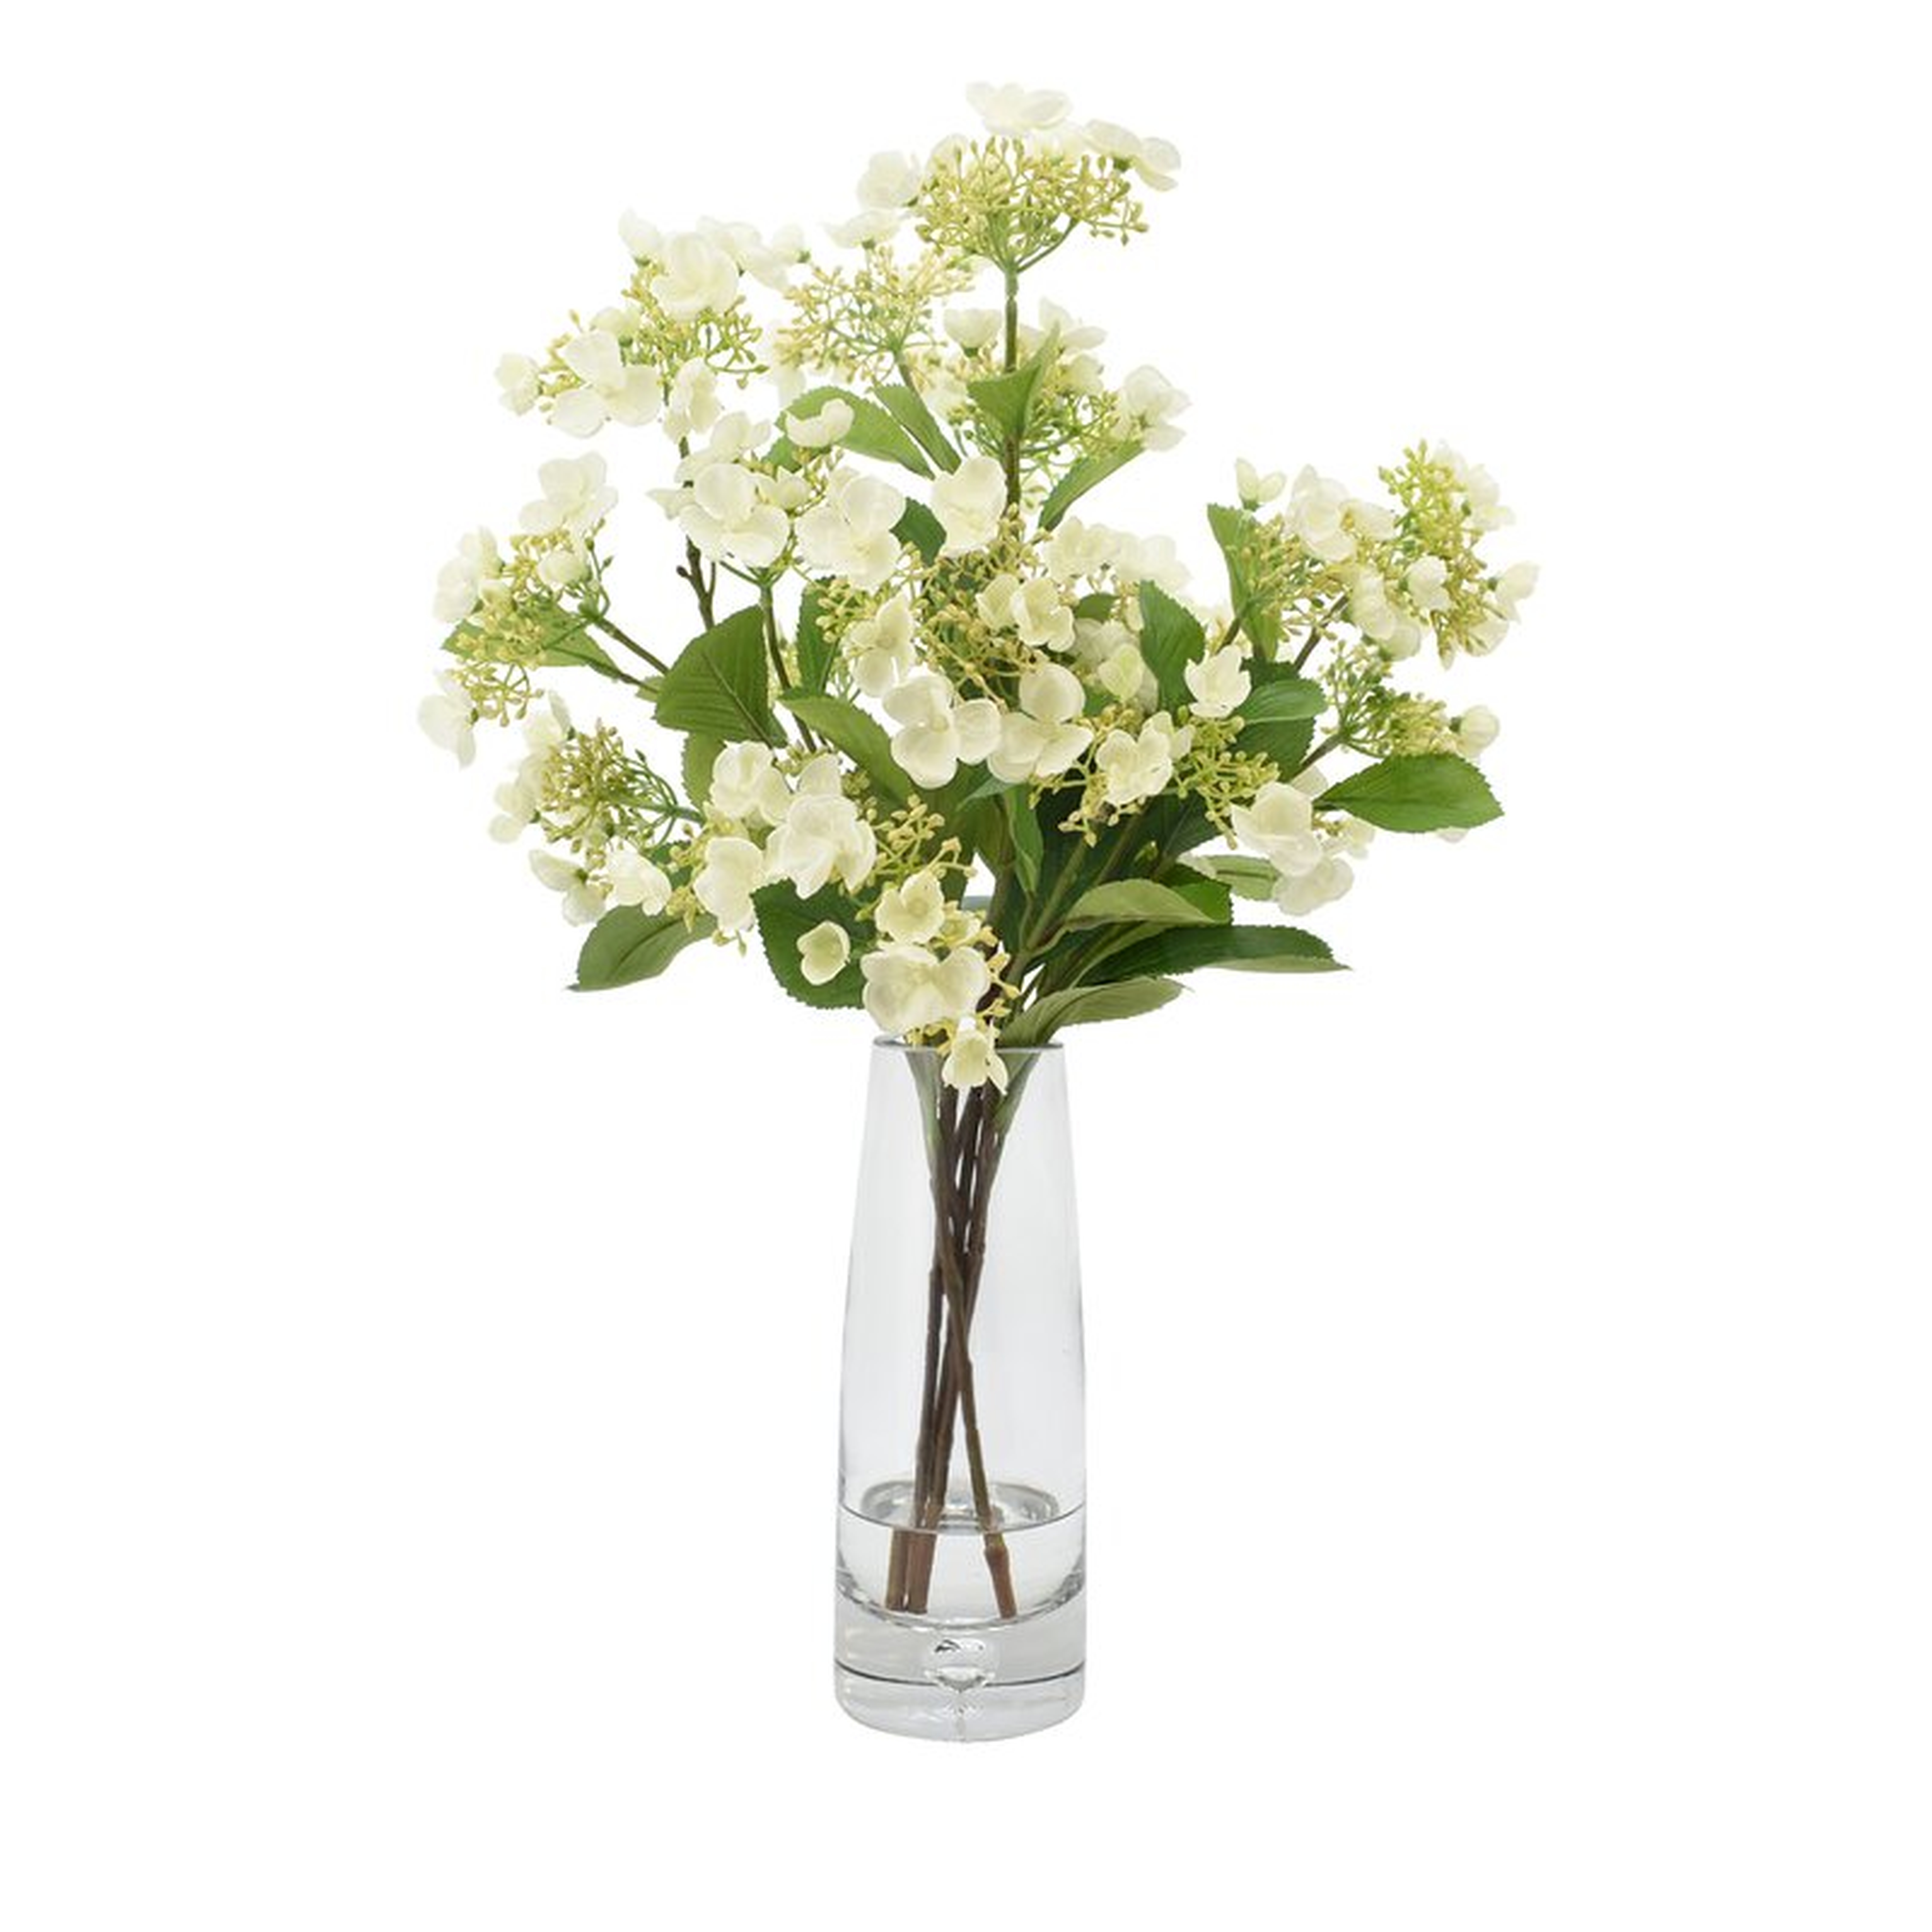 Viburnum Floral Arrangements in Vase Size: 24" H x 17" W x 17" D, Flower Color: White - Perigold